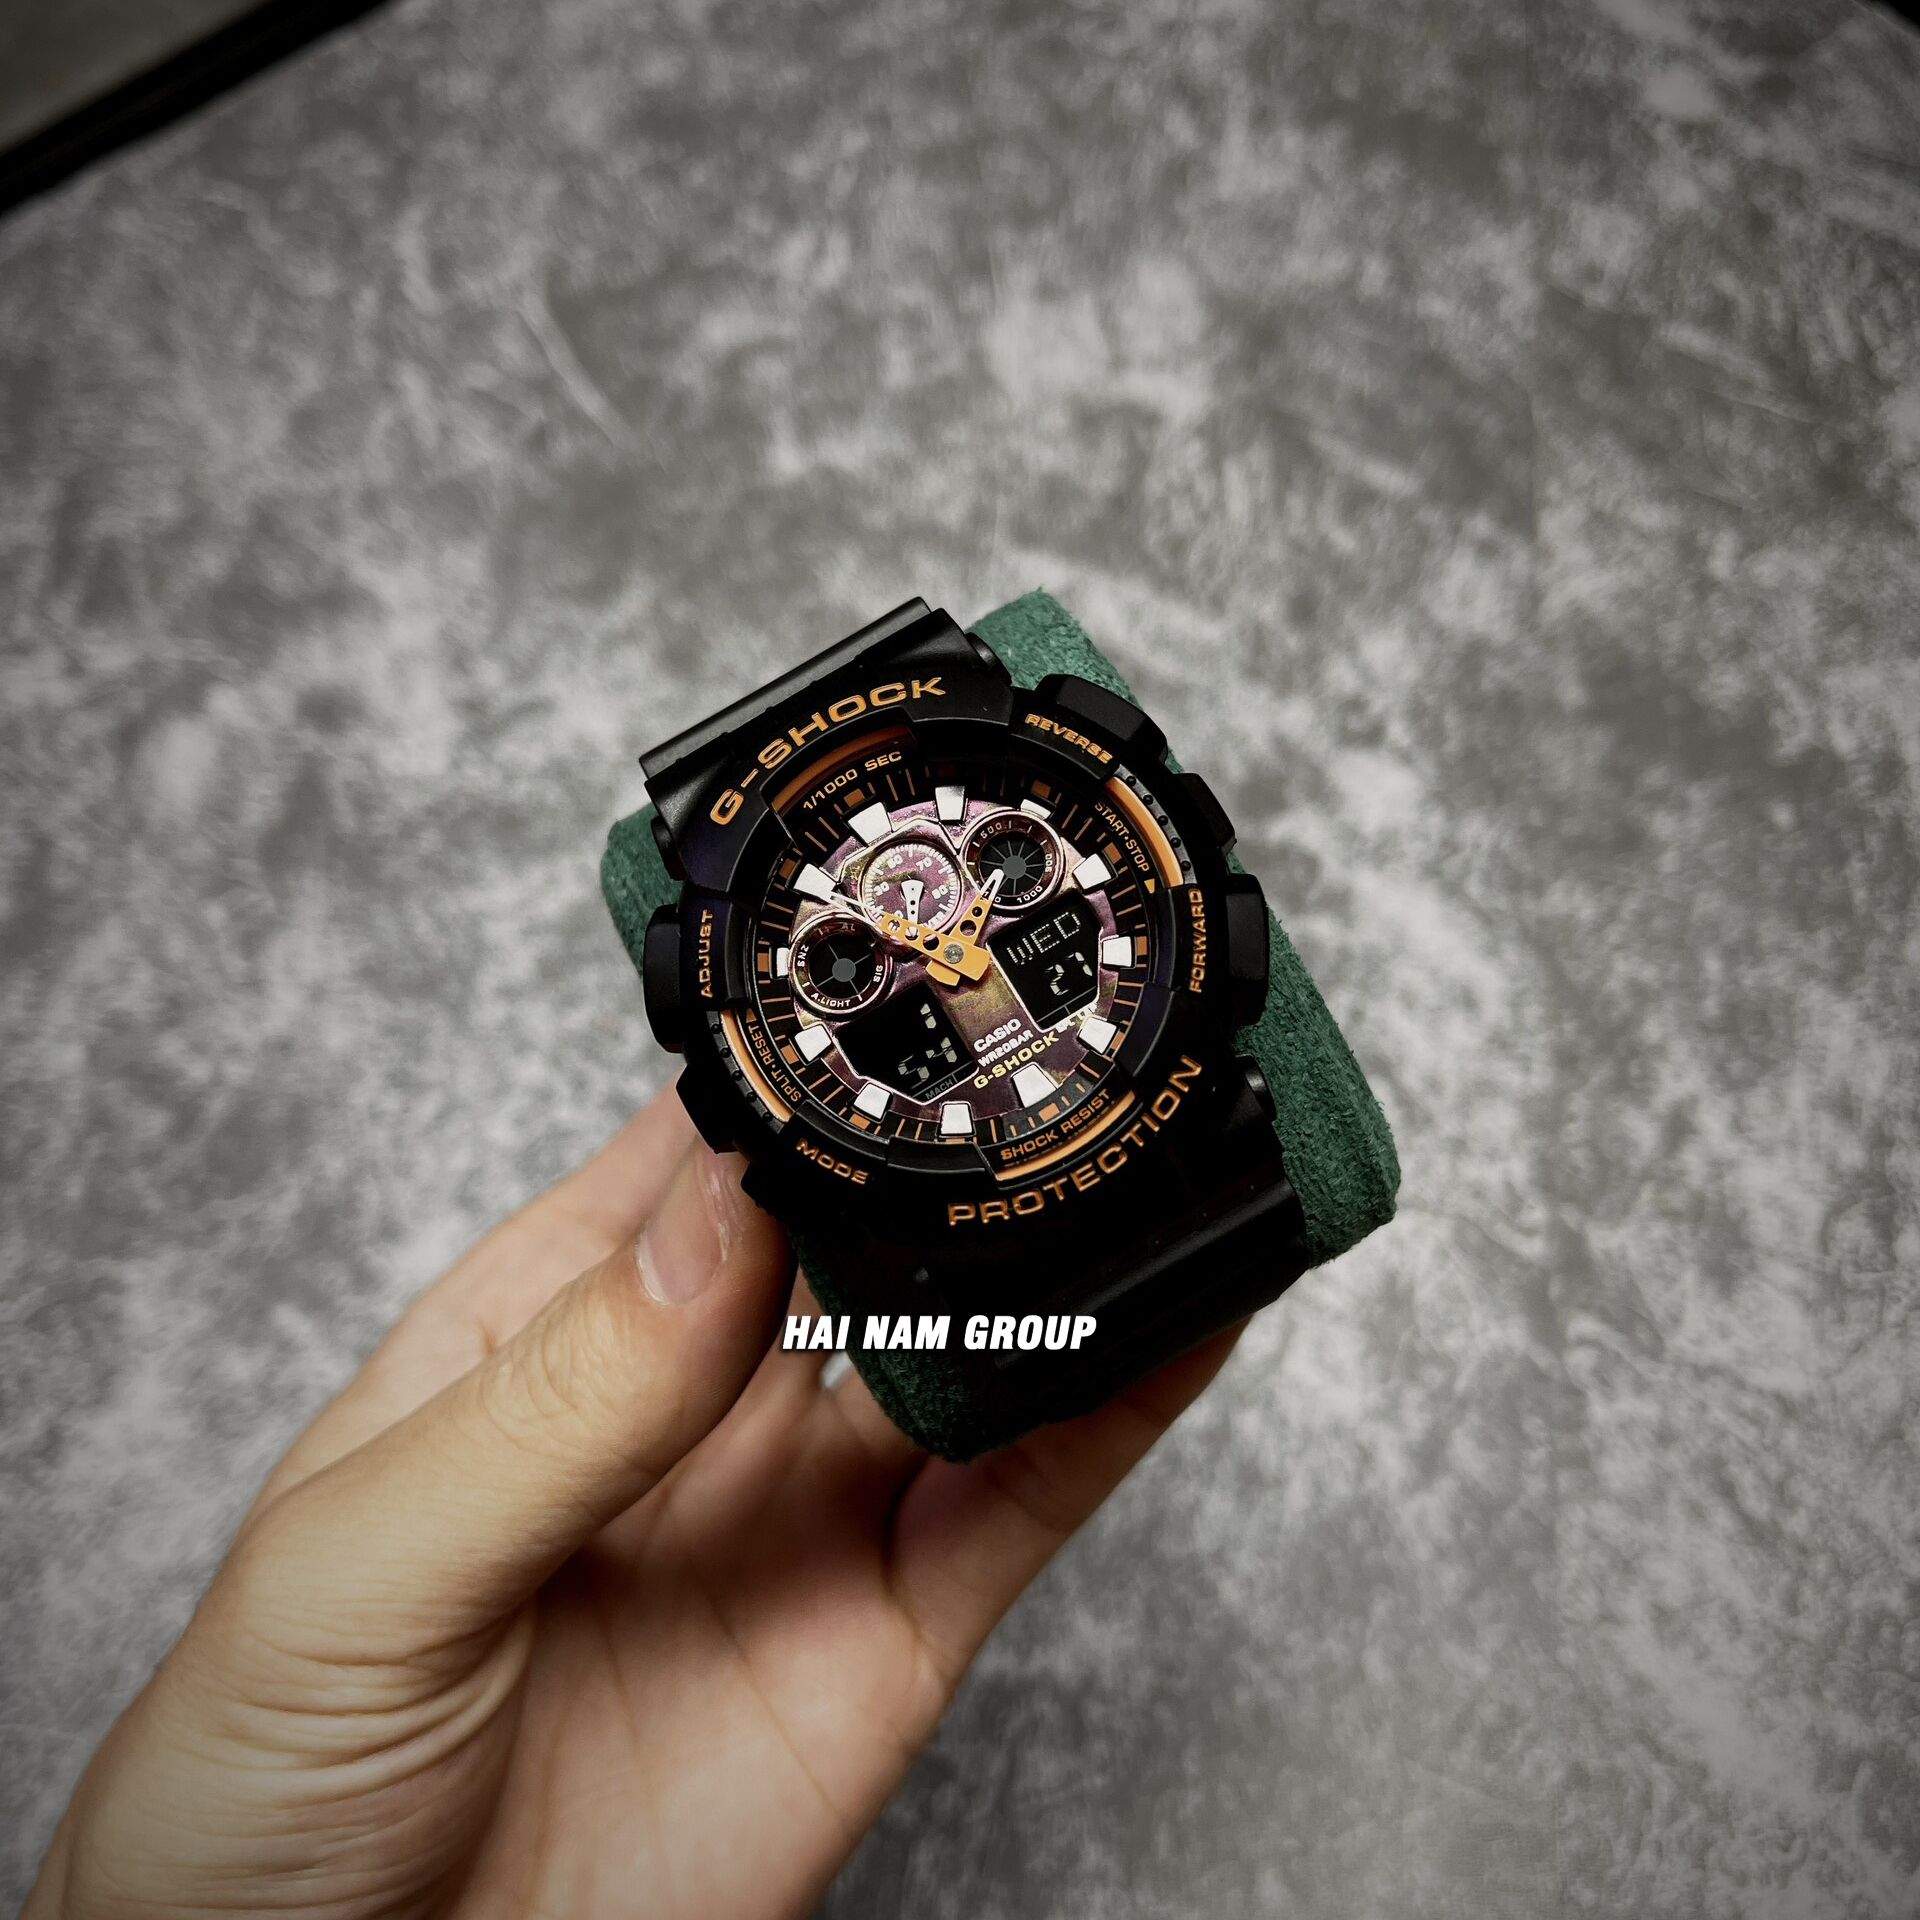 Đồng hồ nam nữ G-SHOCK GA-100TAL-1A REP 1:1 Đen Mặt Camo Cam tại Hải Nam Group 3